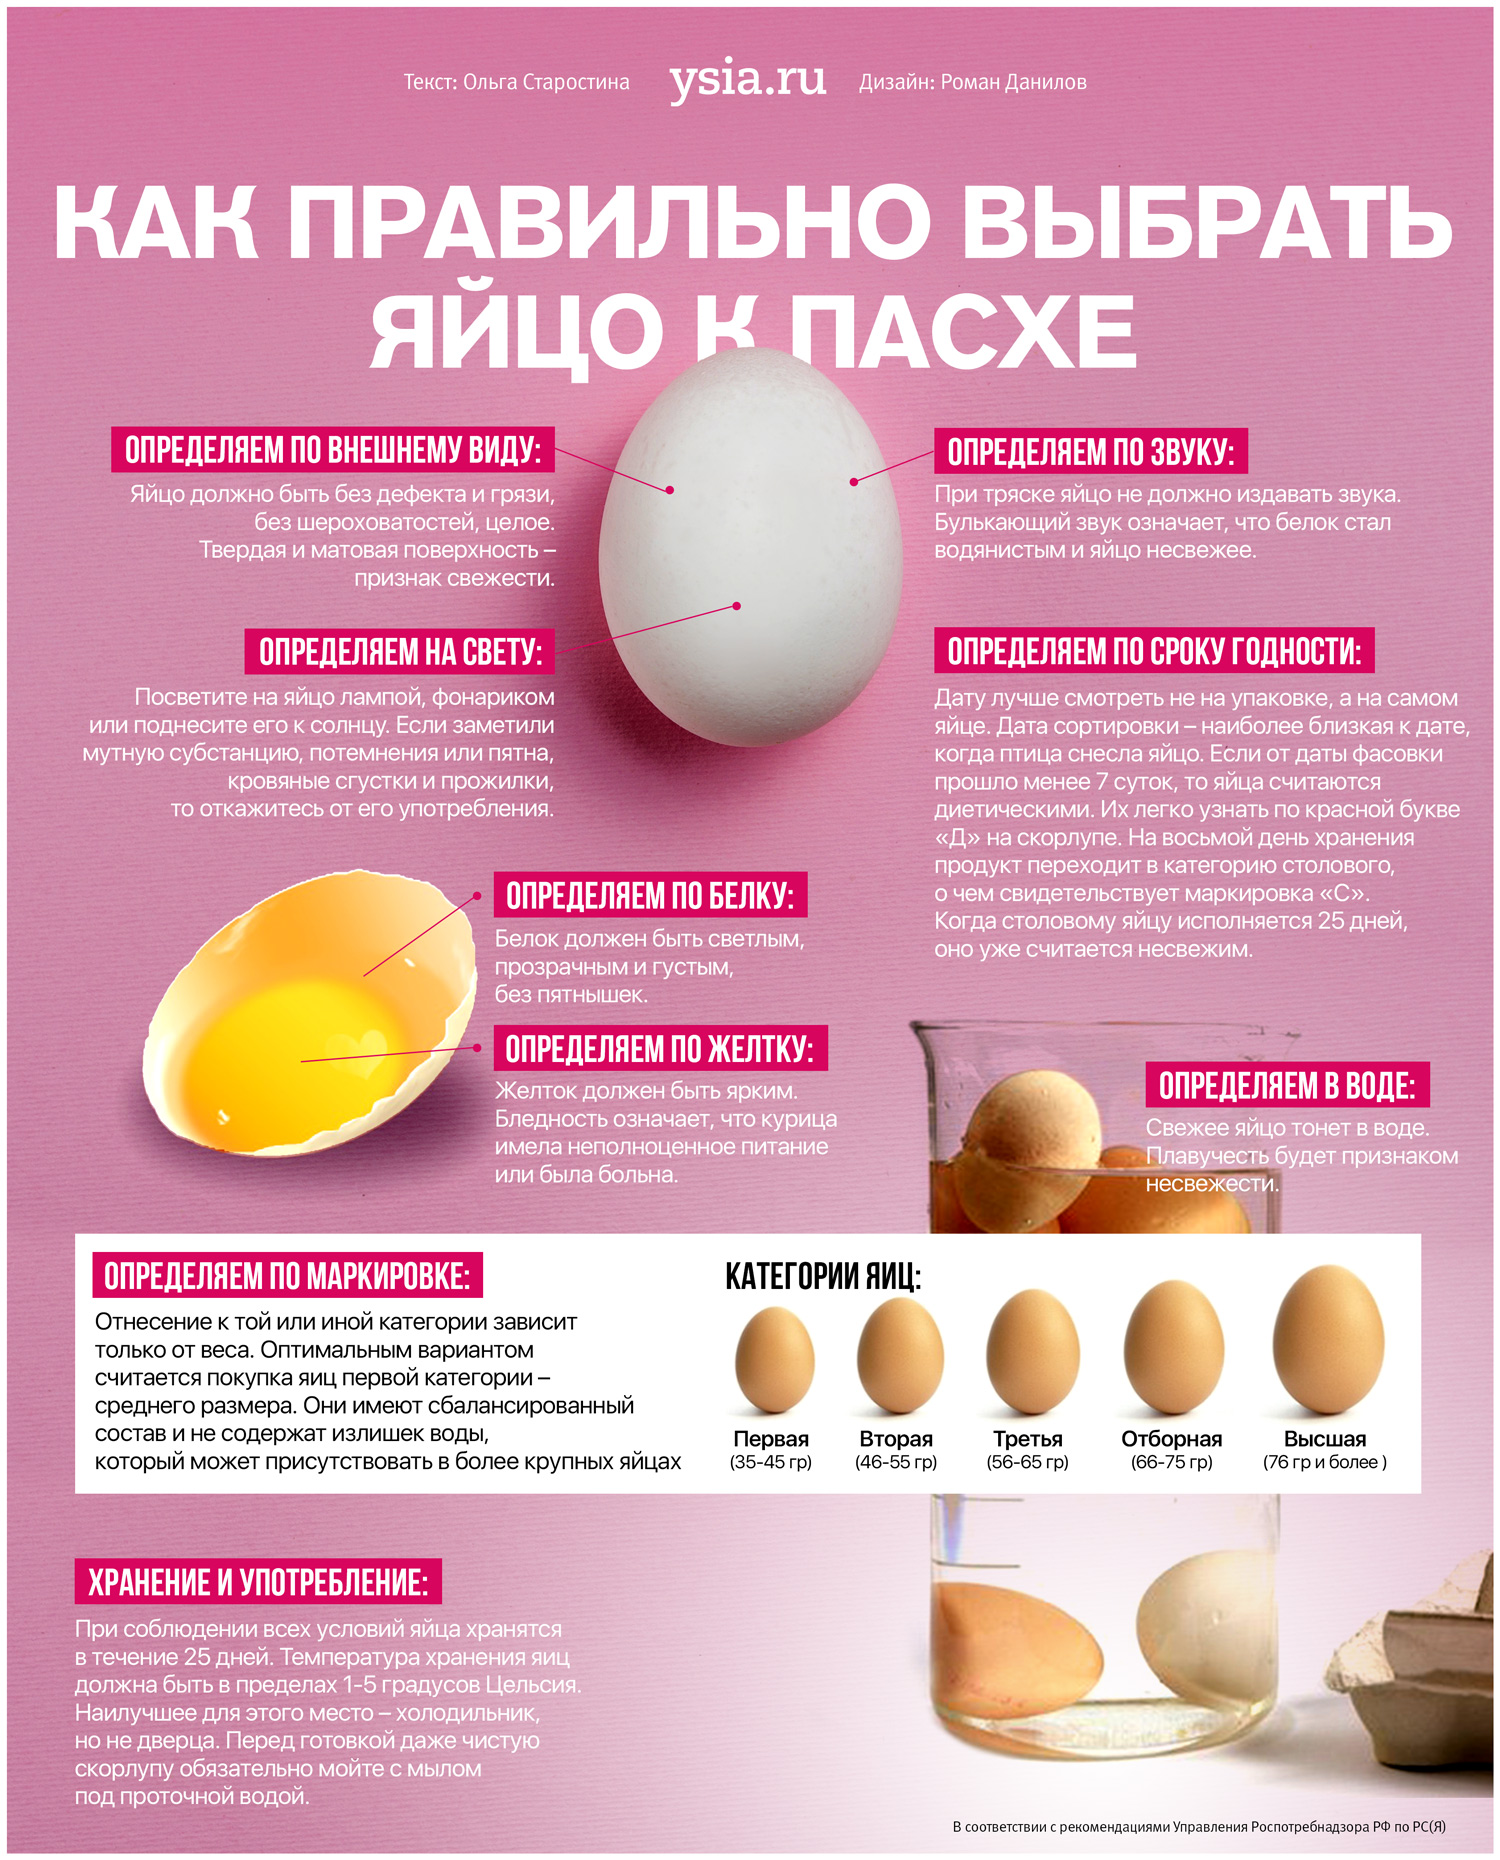 Самое сильное яйцо. Как выбрать яйца. Как правильно выбирать яйца. Инфографика яйцо. Категории яиц куриных.